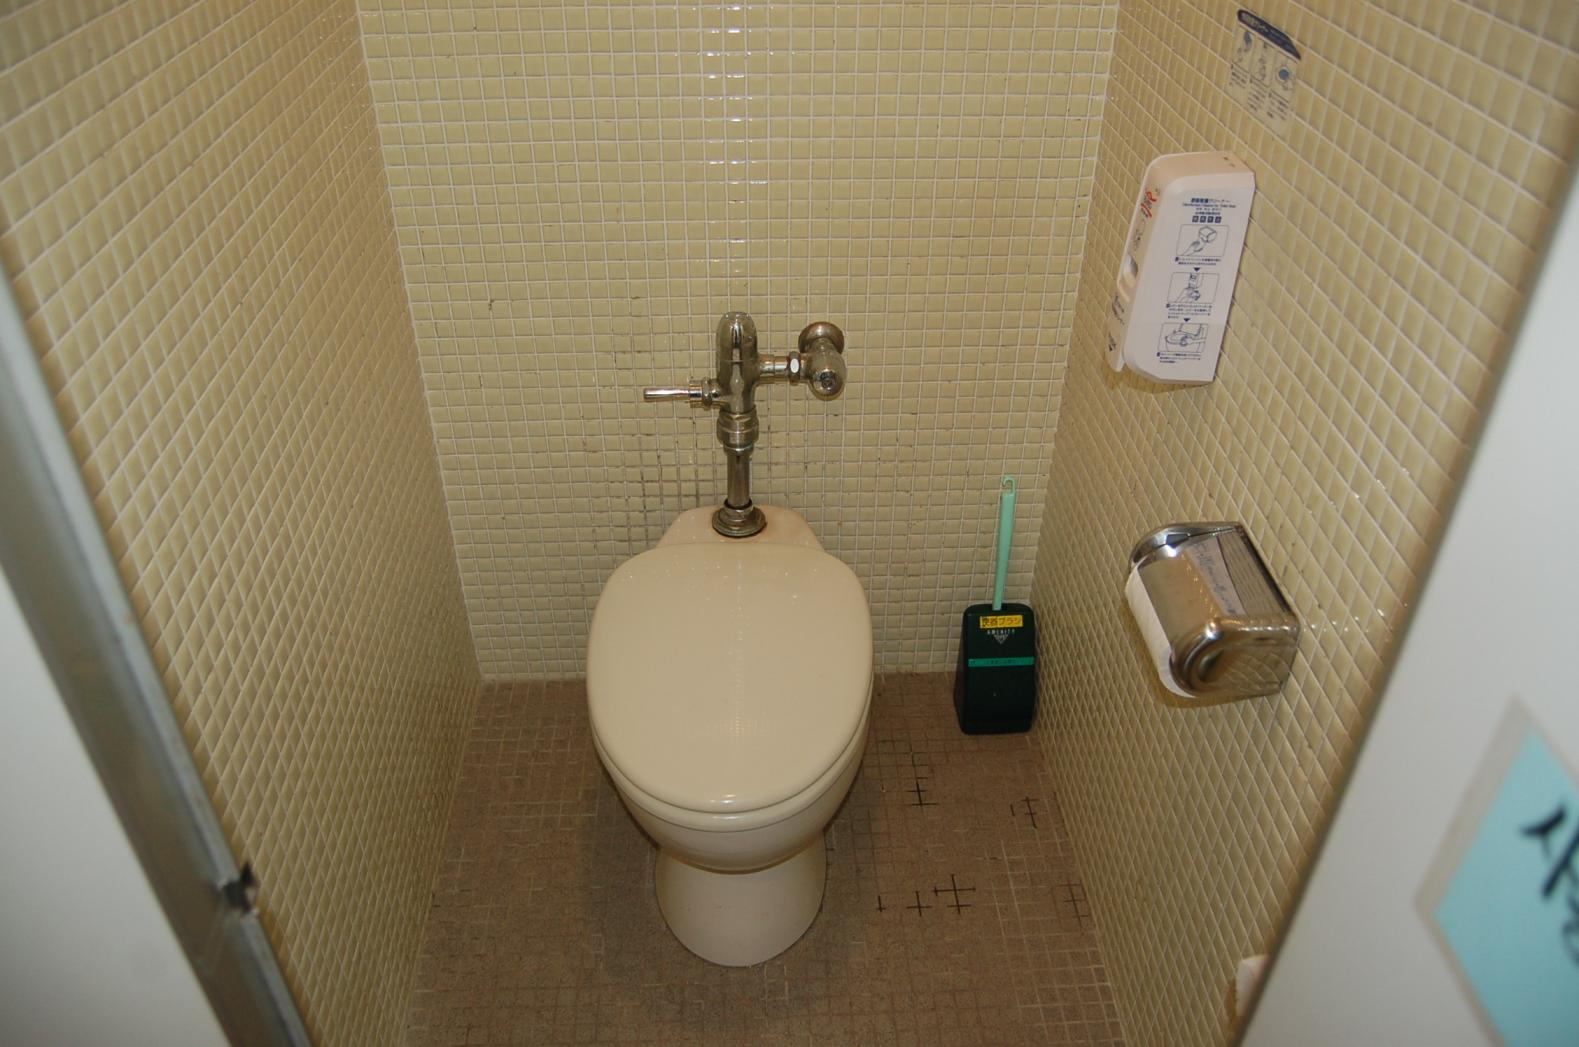 トイレ個室-3